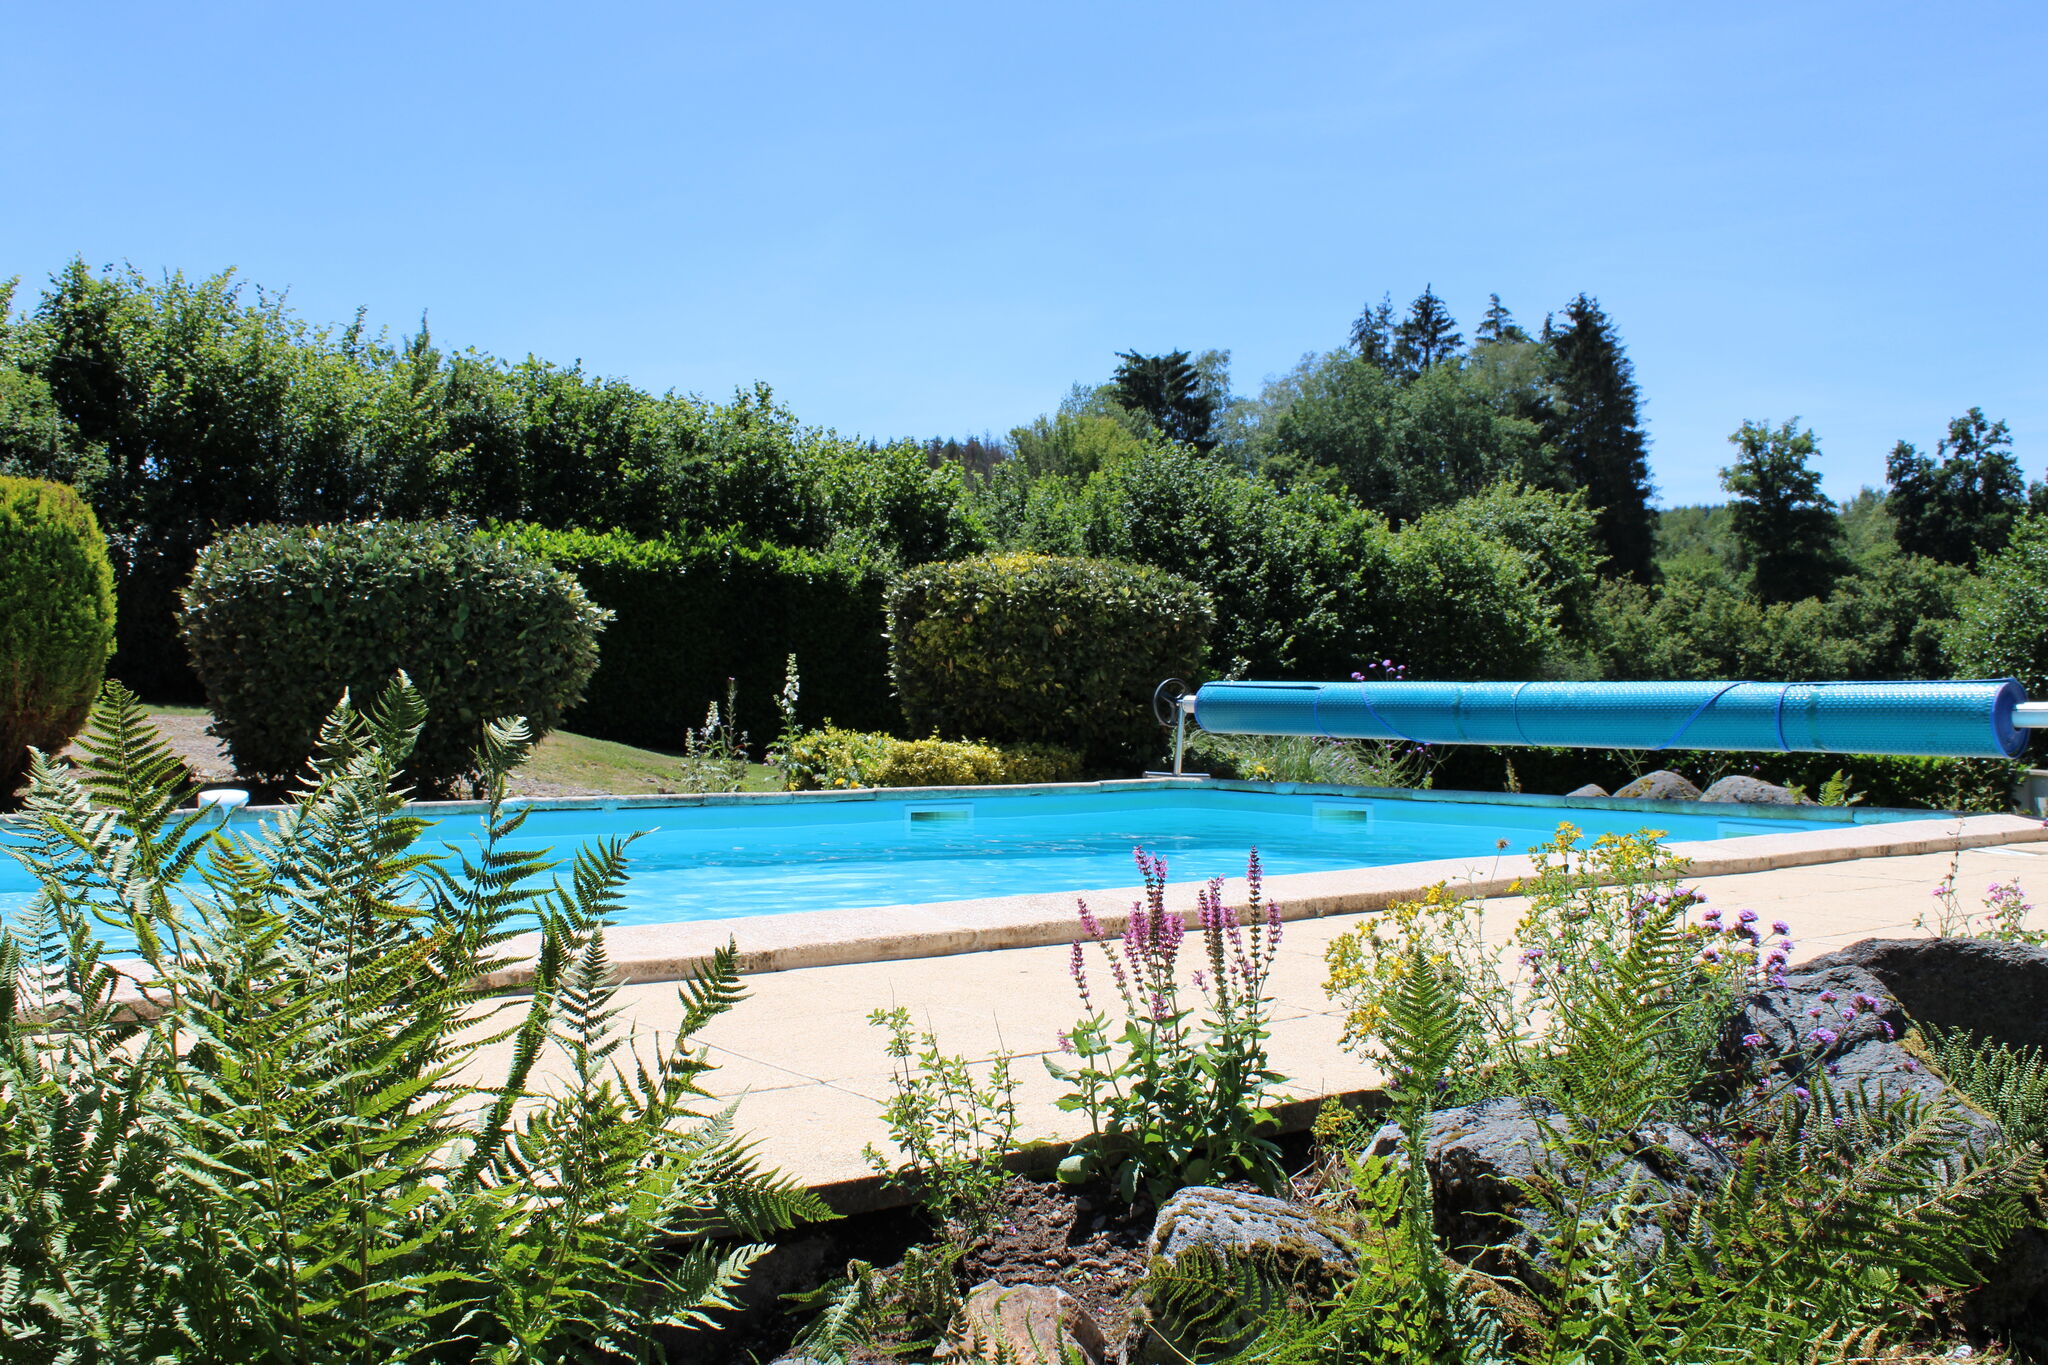 Maison de vacances cosy à Dun-les-Places avec piscine privée